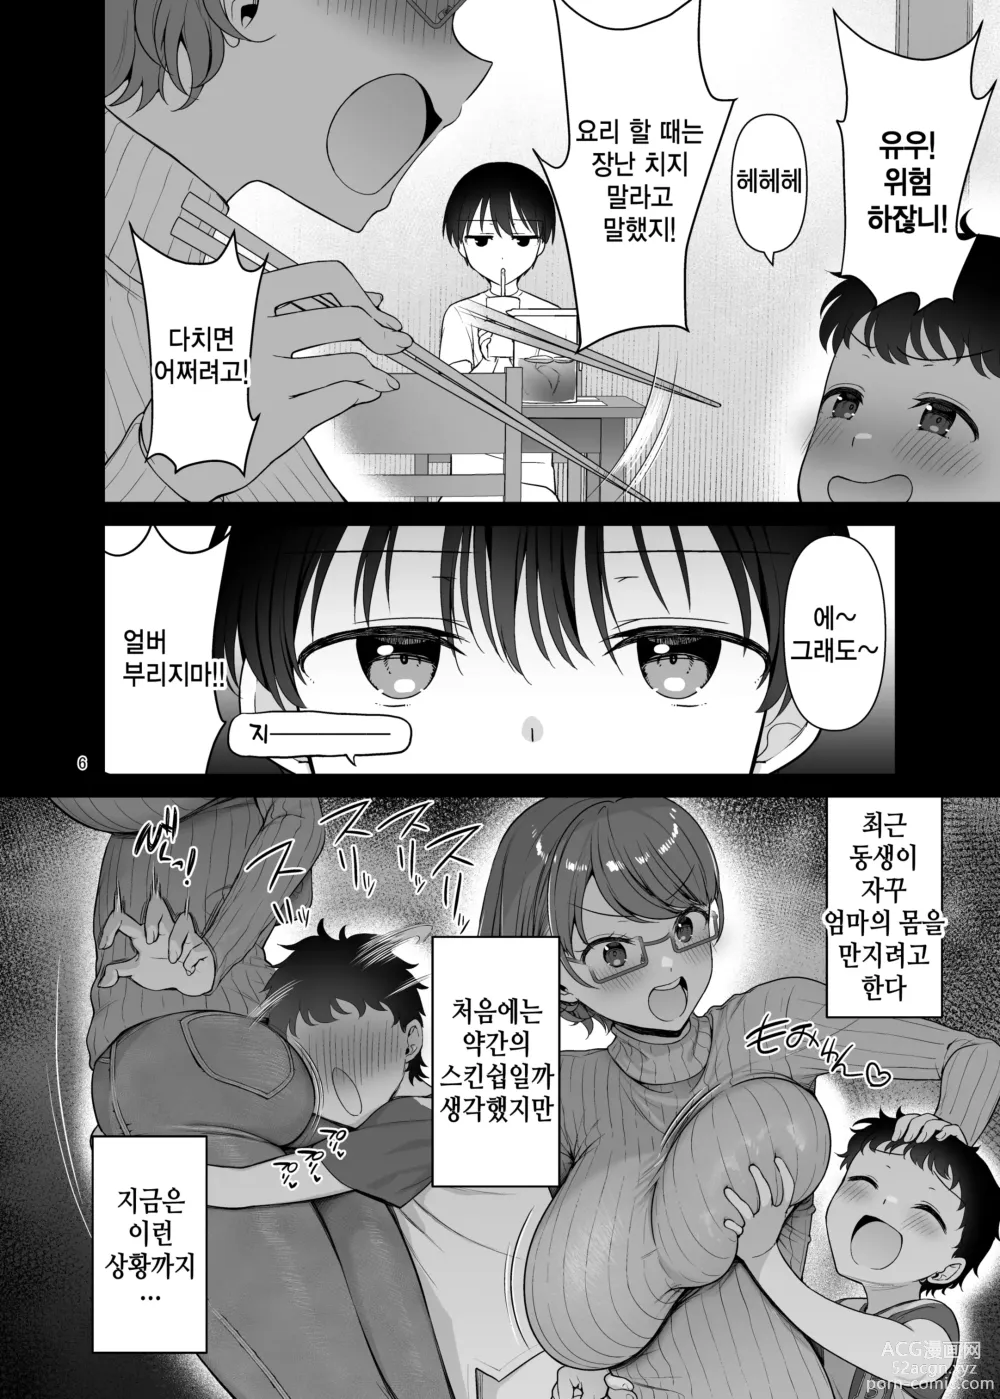 Page 6 of doujinshi 우리 엄마는 동생 앞에서만 초변태가 된다